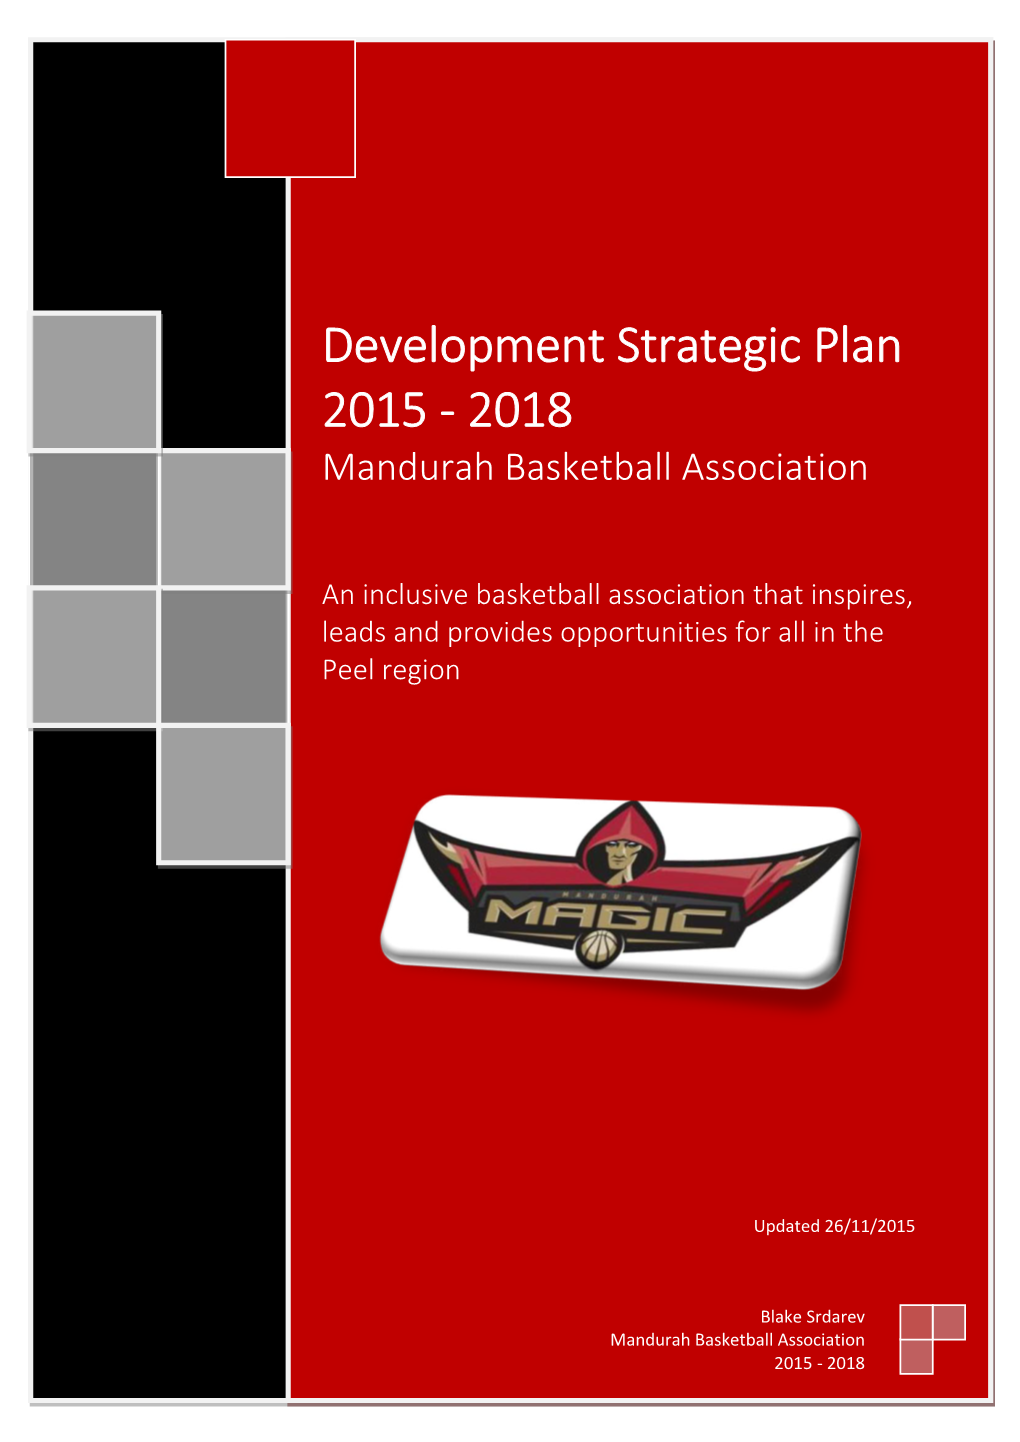 Development Strategic Plan 2015 - 2018 Mandurah Basketball Association